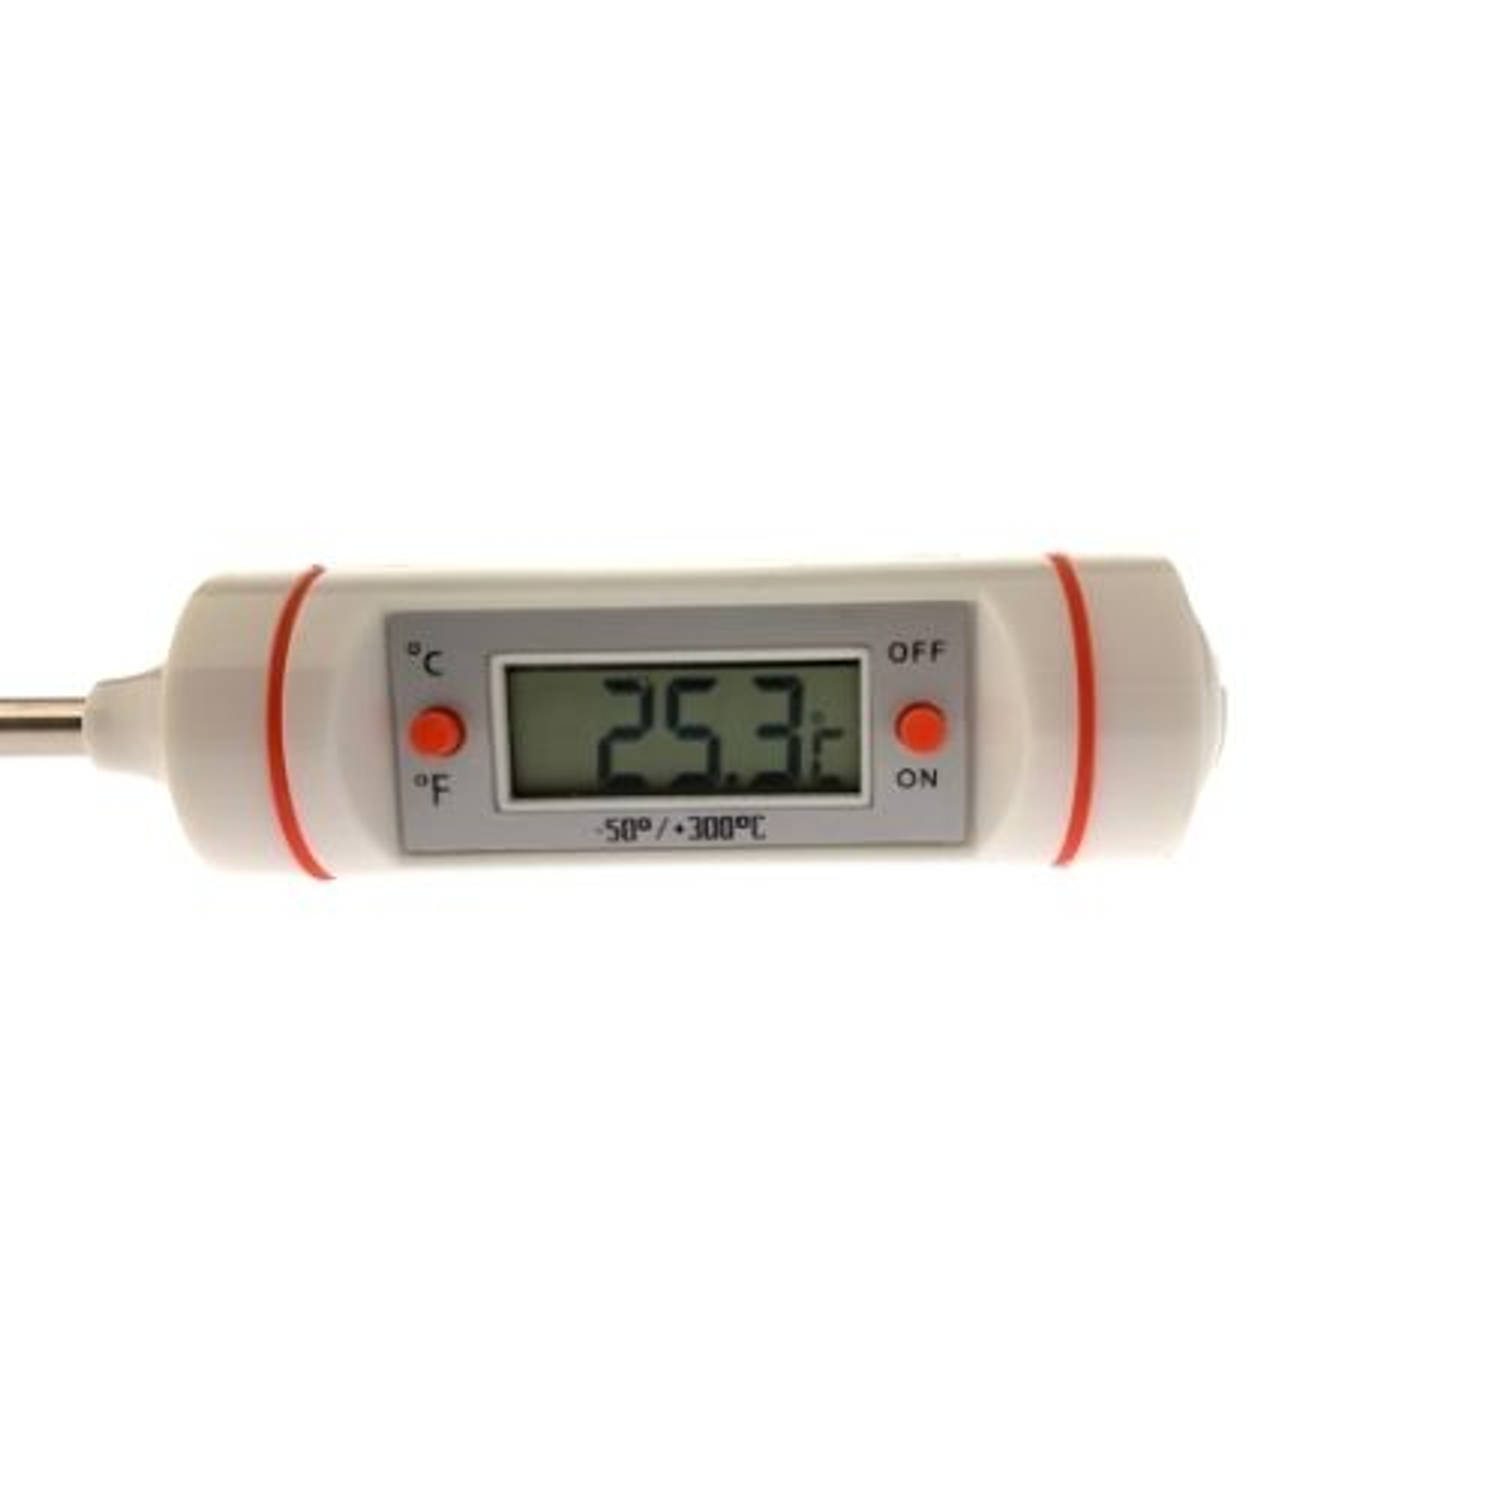 Knop publiek Ontoegankelijk Orange85 Vleesthermometer - Digitaal - Oven - barbecue - thermometer |  Blokker